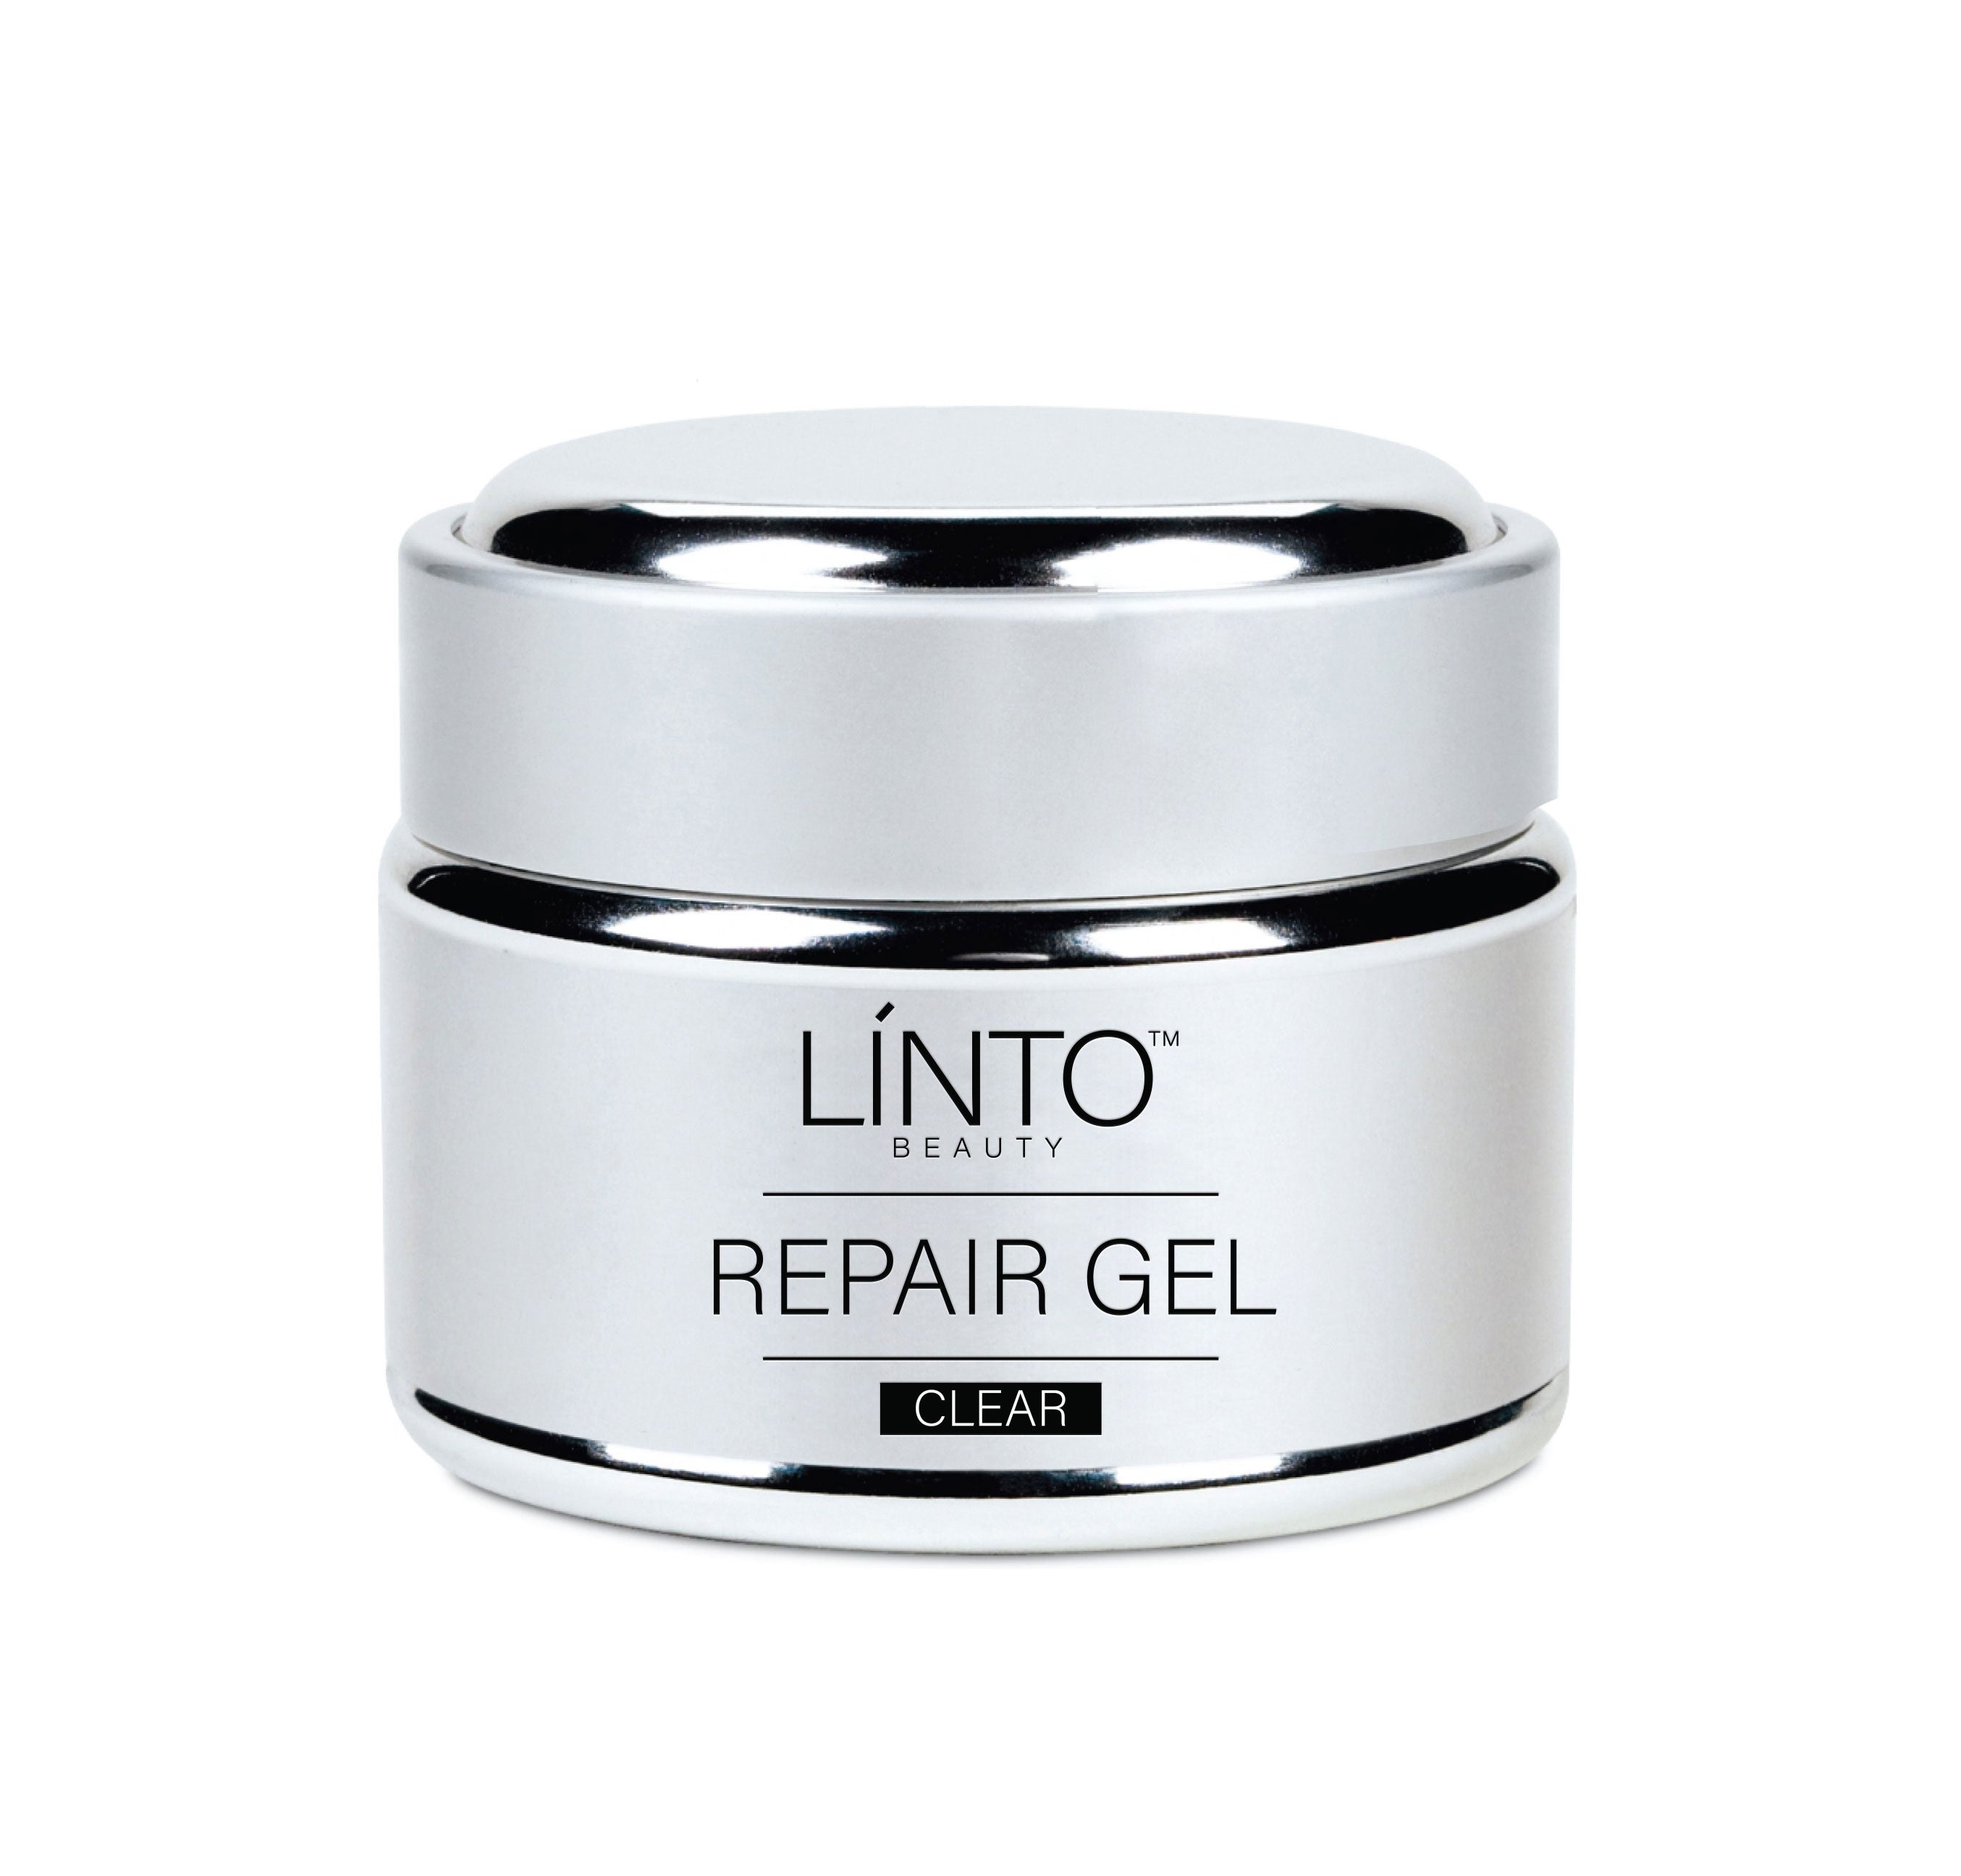 Repair gel clear by LiNTO